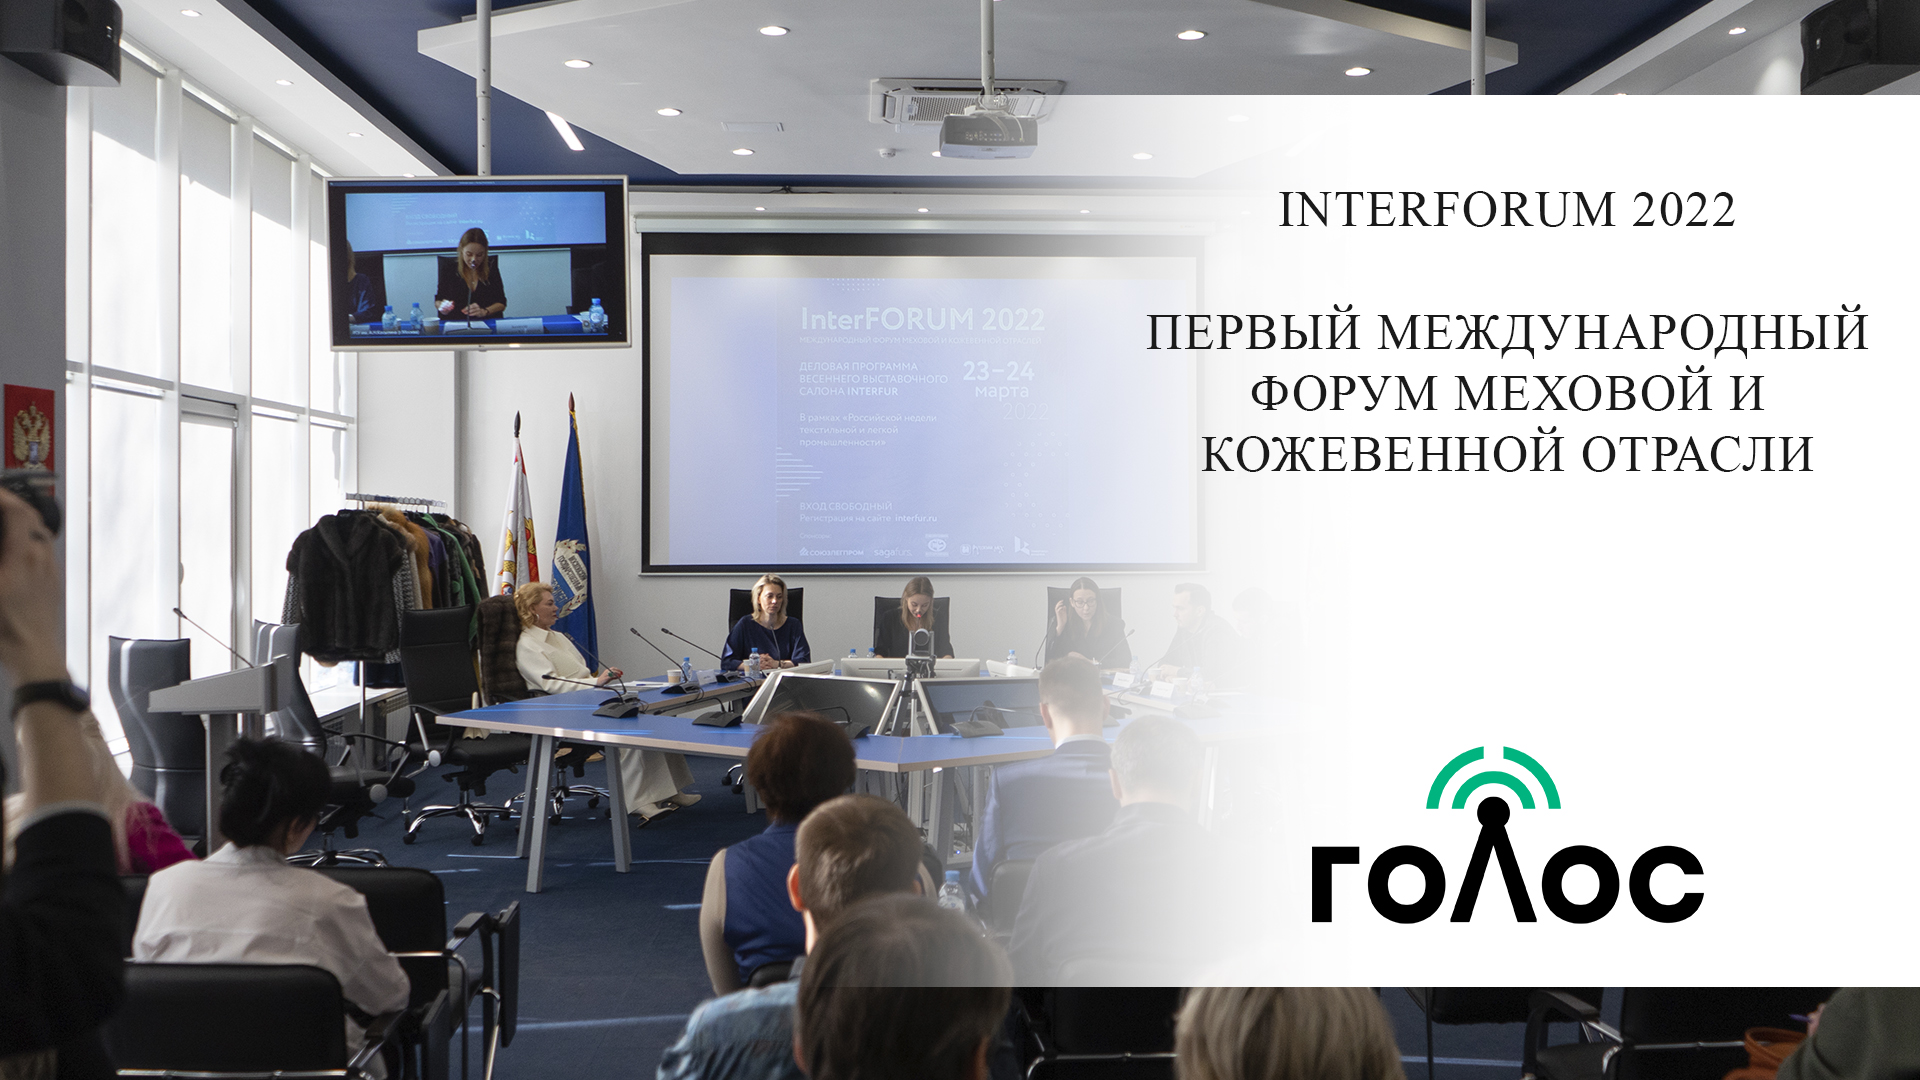 InterForum - 2022 в РГУ им. А.Н. Косыгина